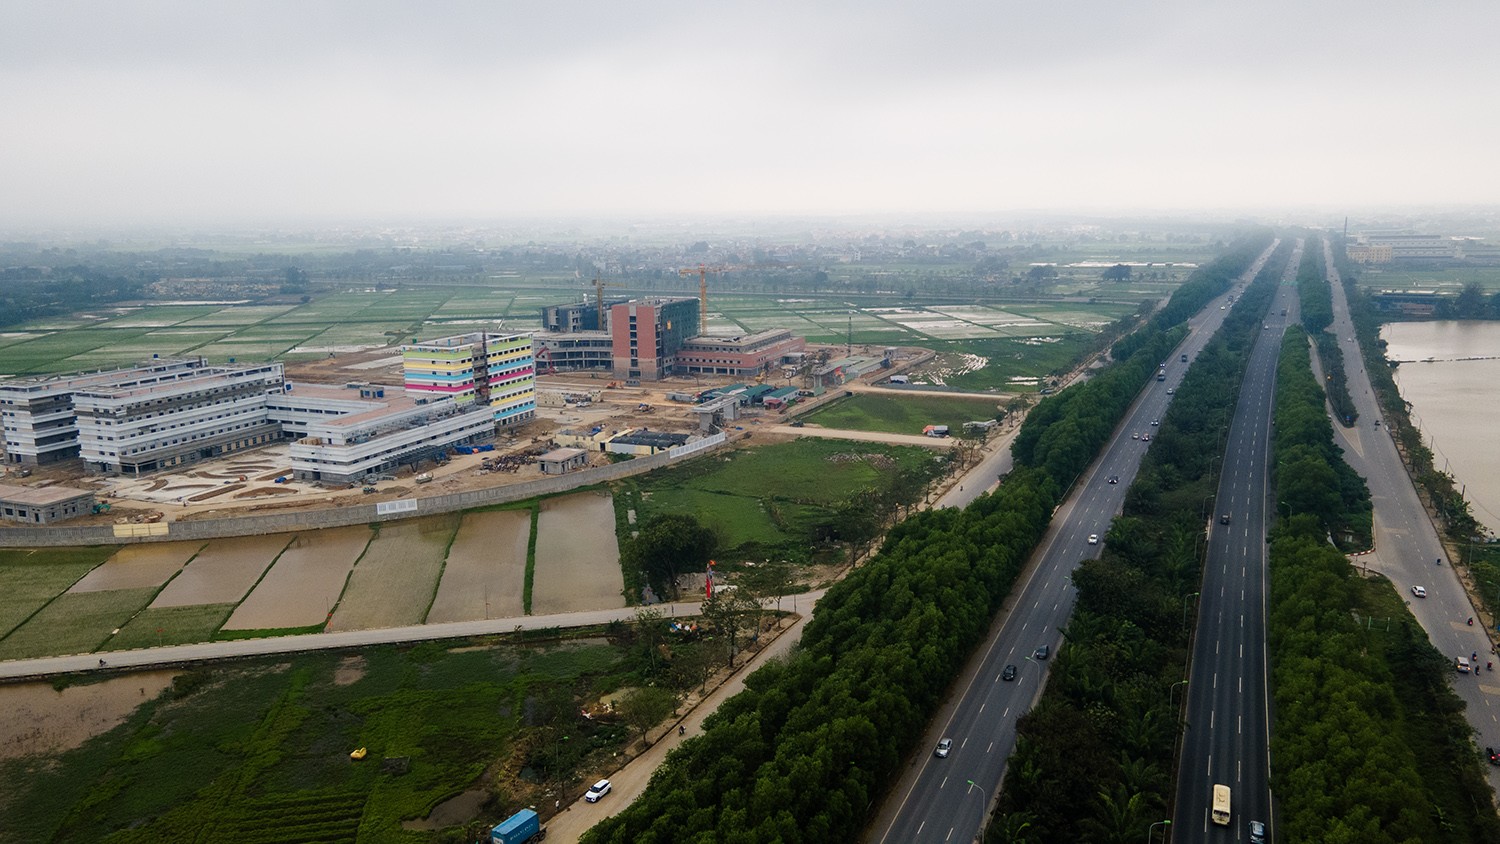 Bệnh viện Phụ sản Trung ương cơ sở 2 và Bệnh viện Nhi Trung ương cơ sở 2 được khởi công từ tháng 2/2023 tại thôn Ngọc Than, xã Ngọc Mỹ, huyện Quốc Oai, Hà Nội, tiếp giáp Đại lộ Thăng Long, gần quốc lộ 21A, tỉnh lộ 80, 81.